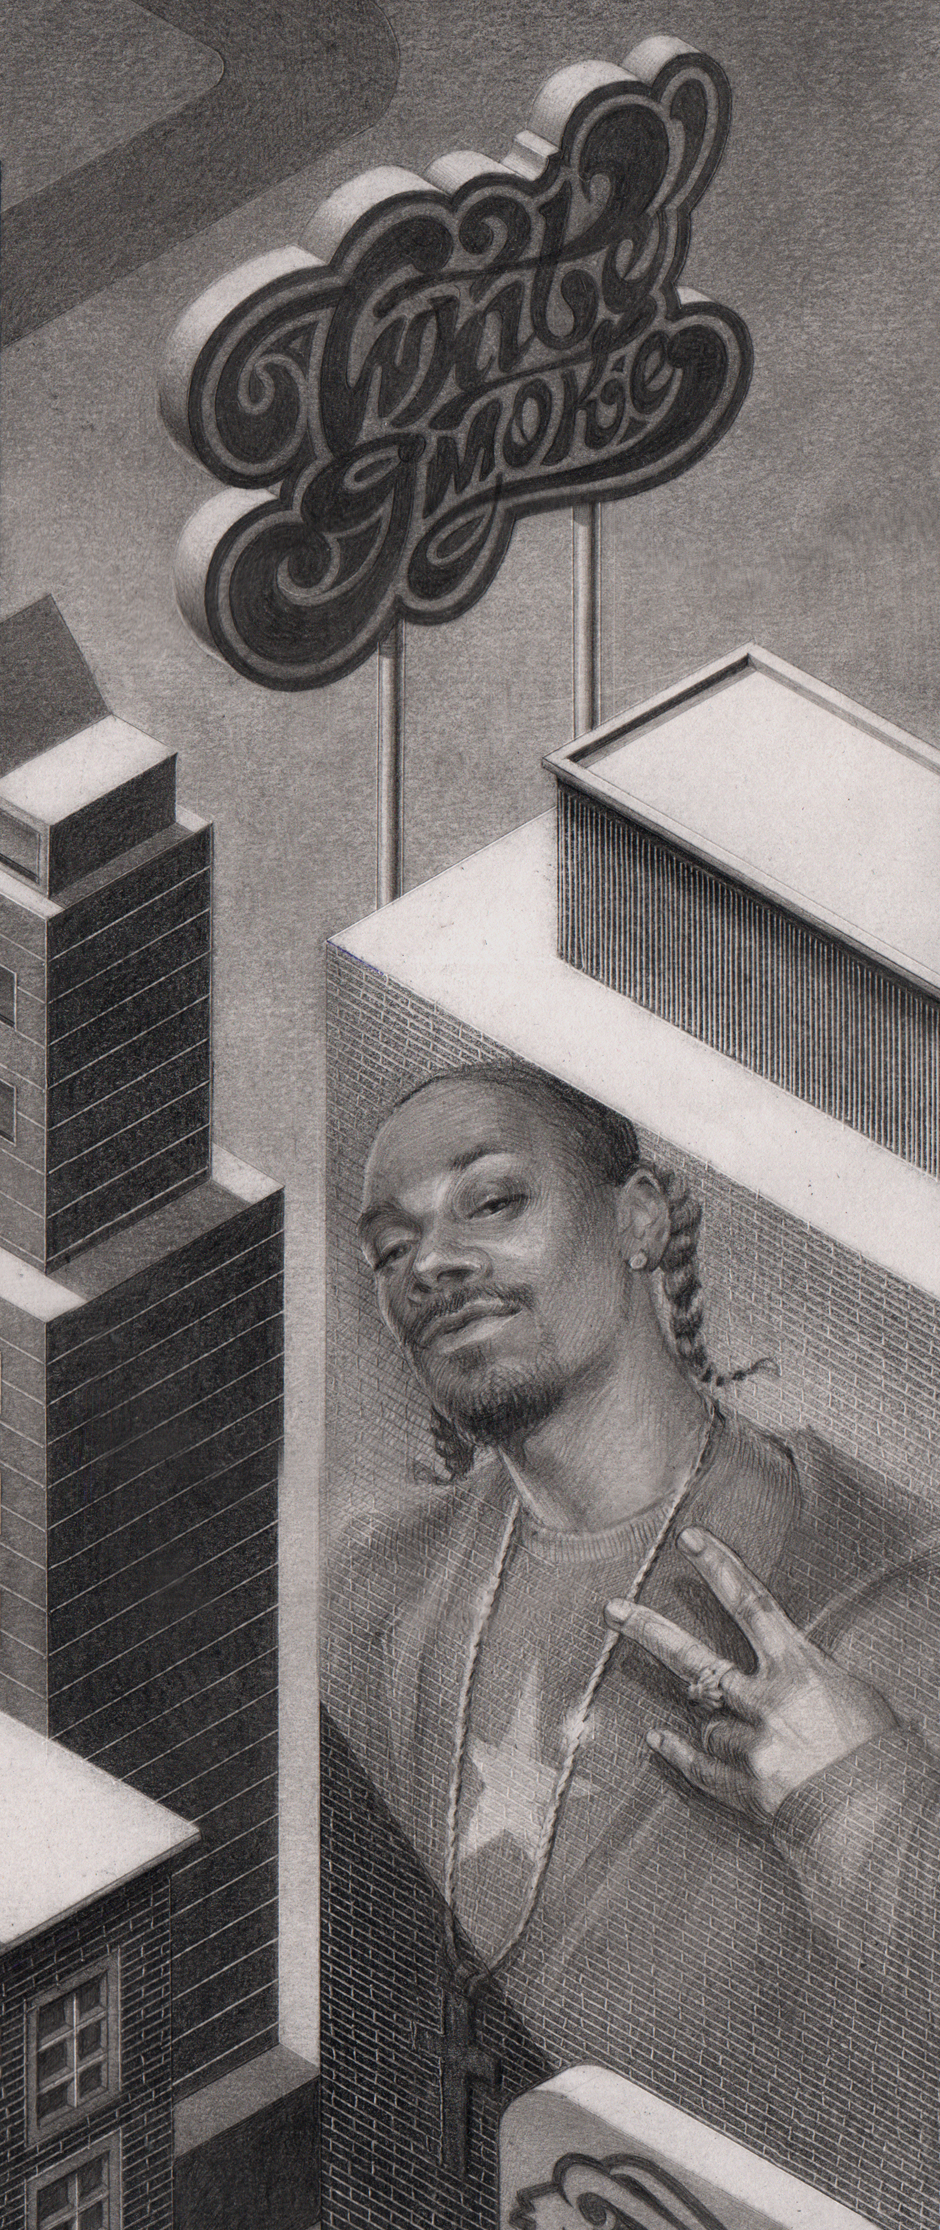 graphite pencil city rap